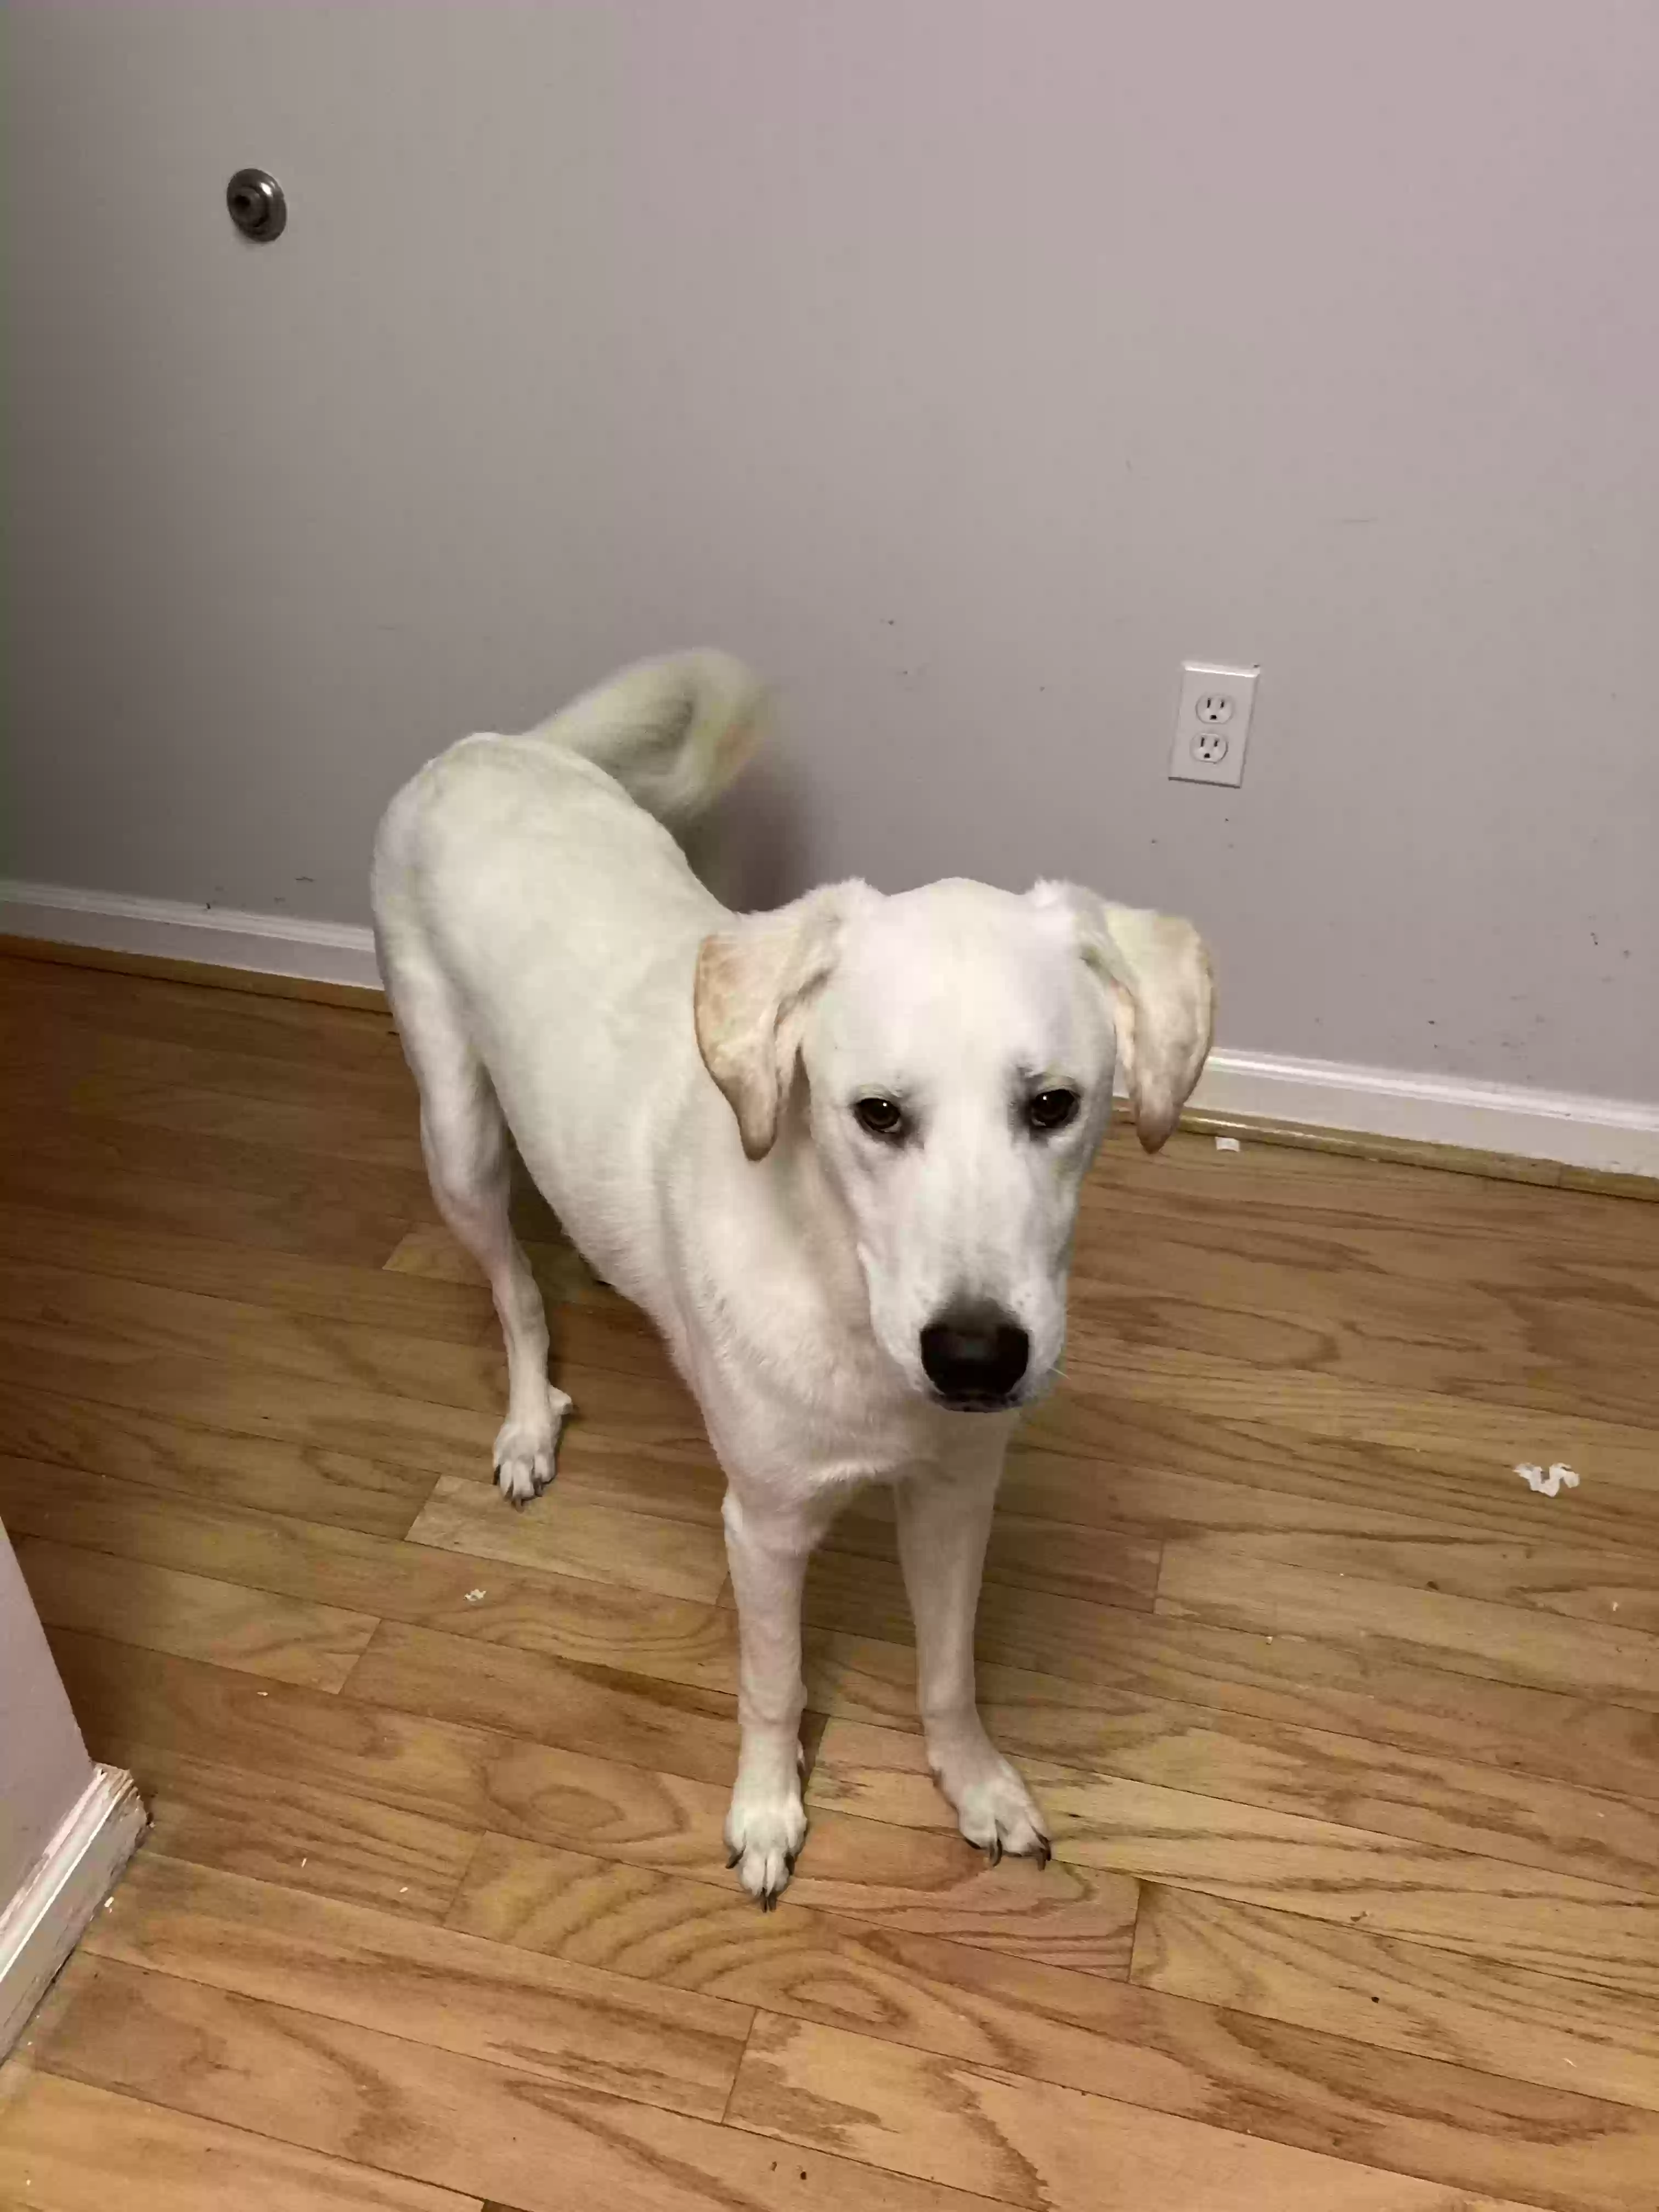 adoptable Dog in Atlanta,GA named Archie